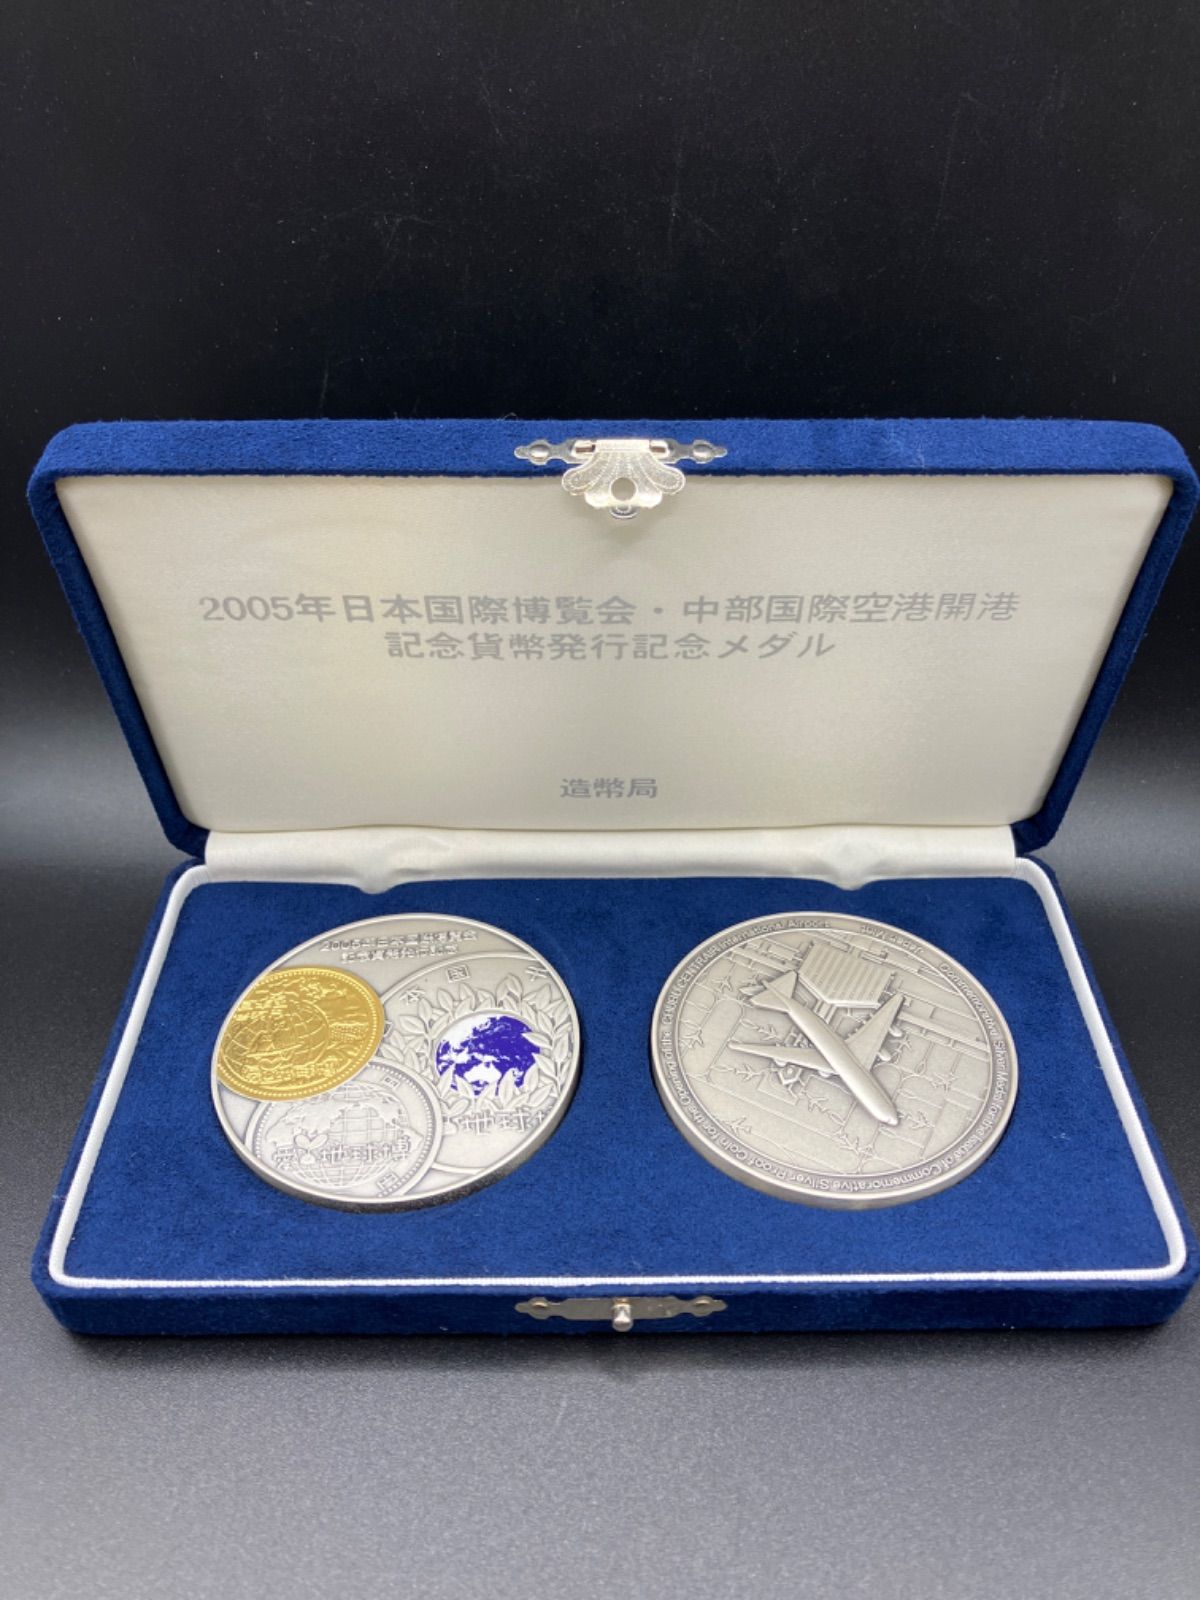 2005年日本国際博覧会・中部国際空港開港記念貨幣発行記念メダル 純銀製 造幣局